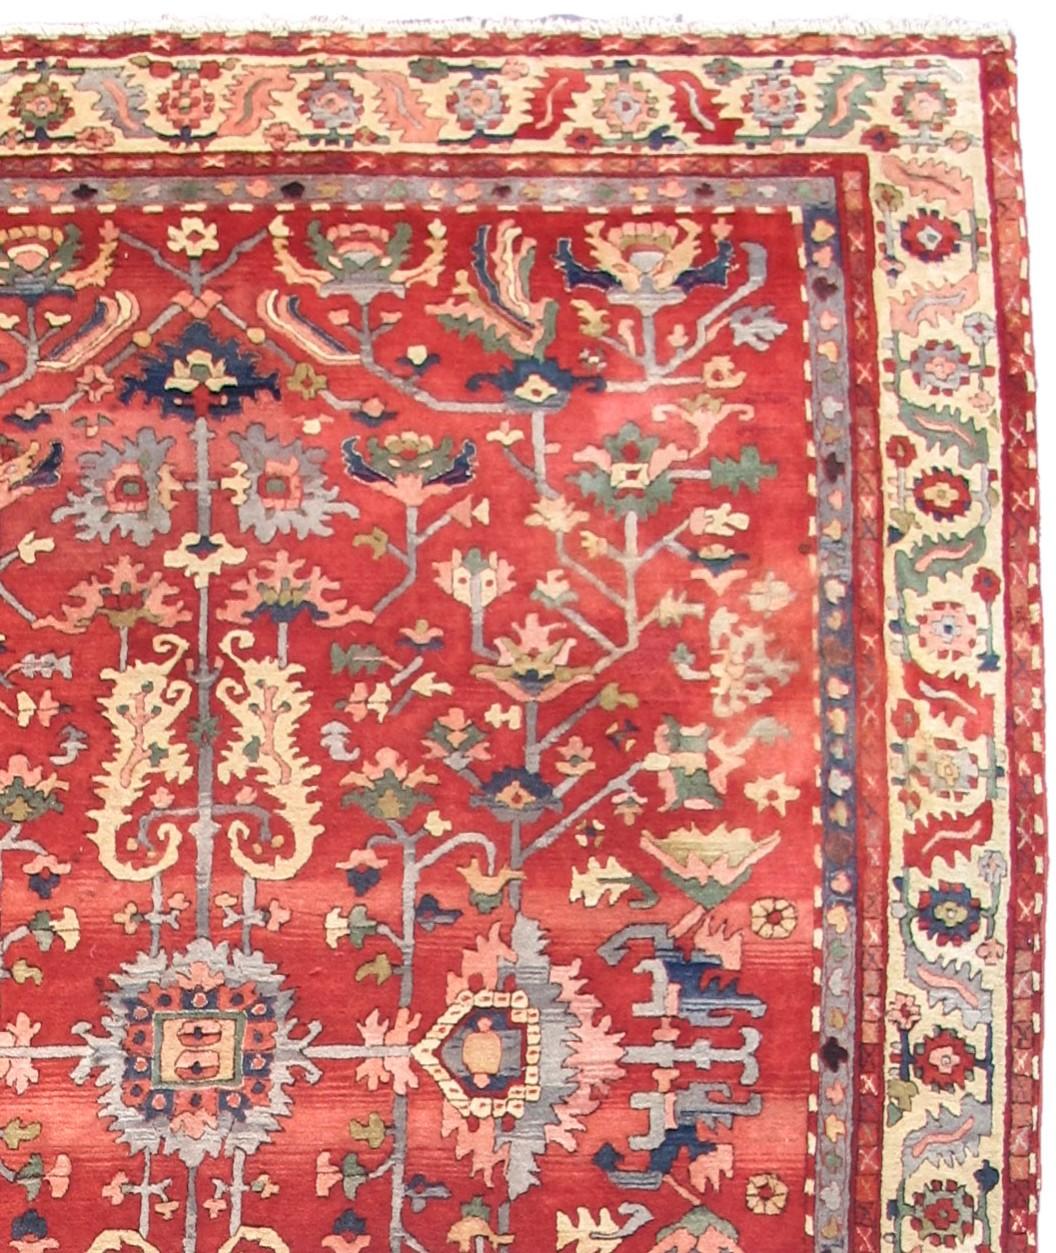 German Tetex hooked rug. Measures: 9'0